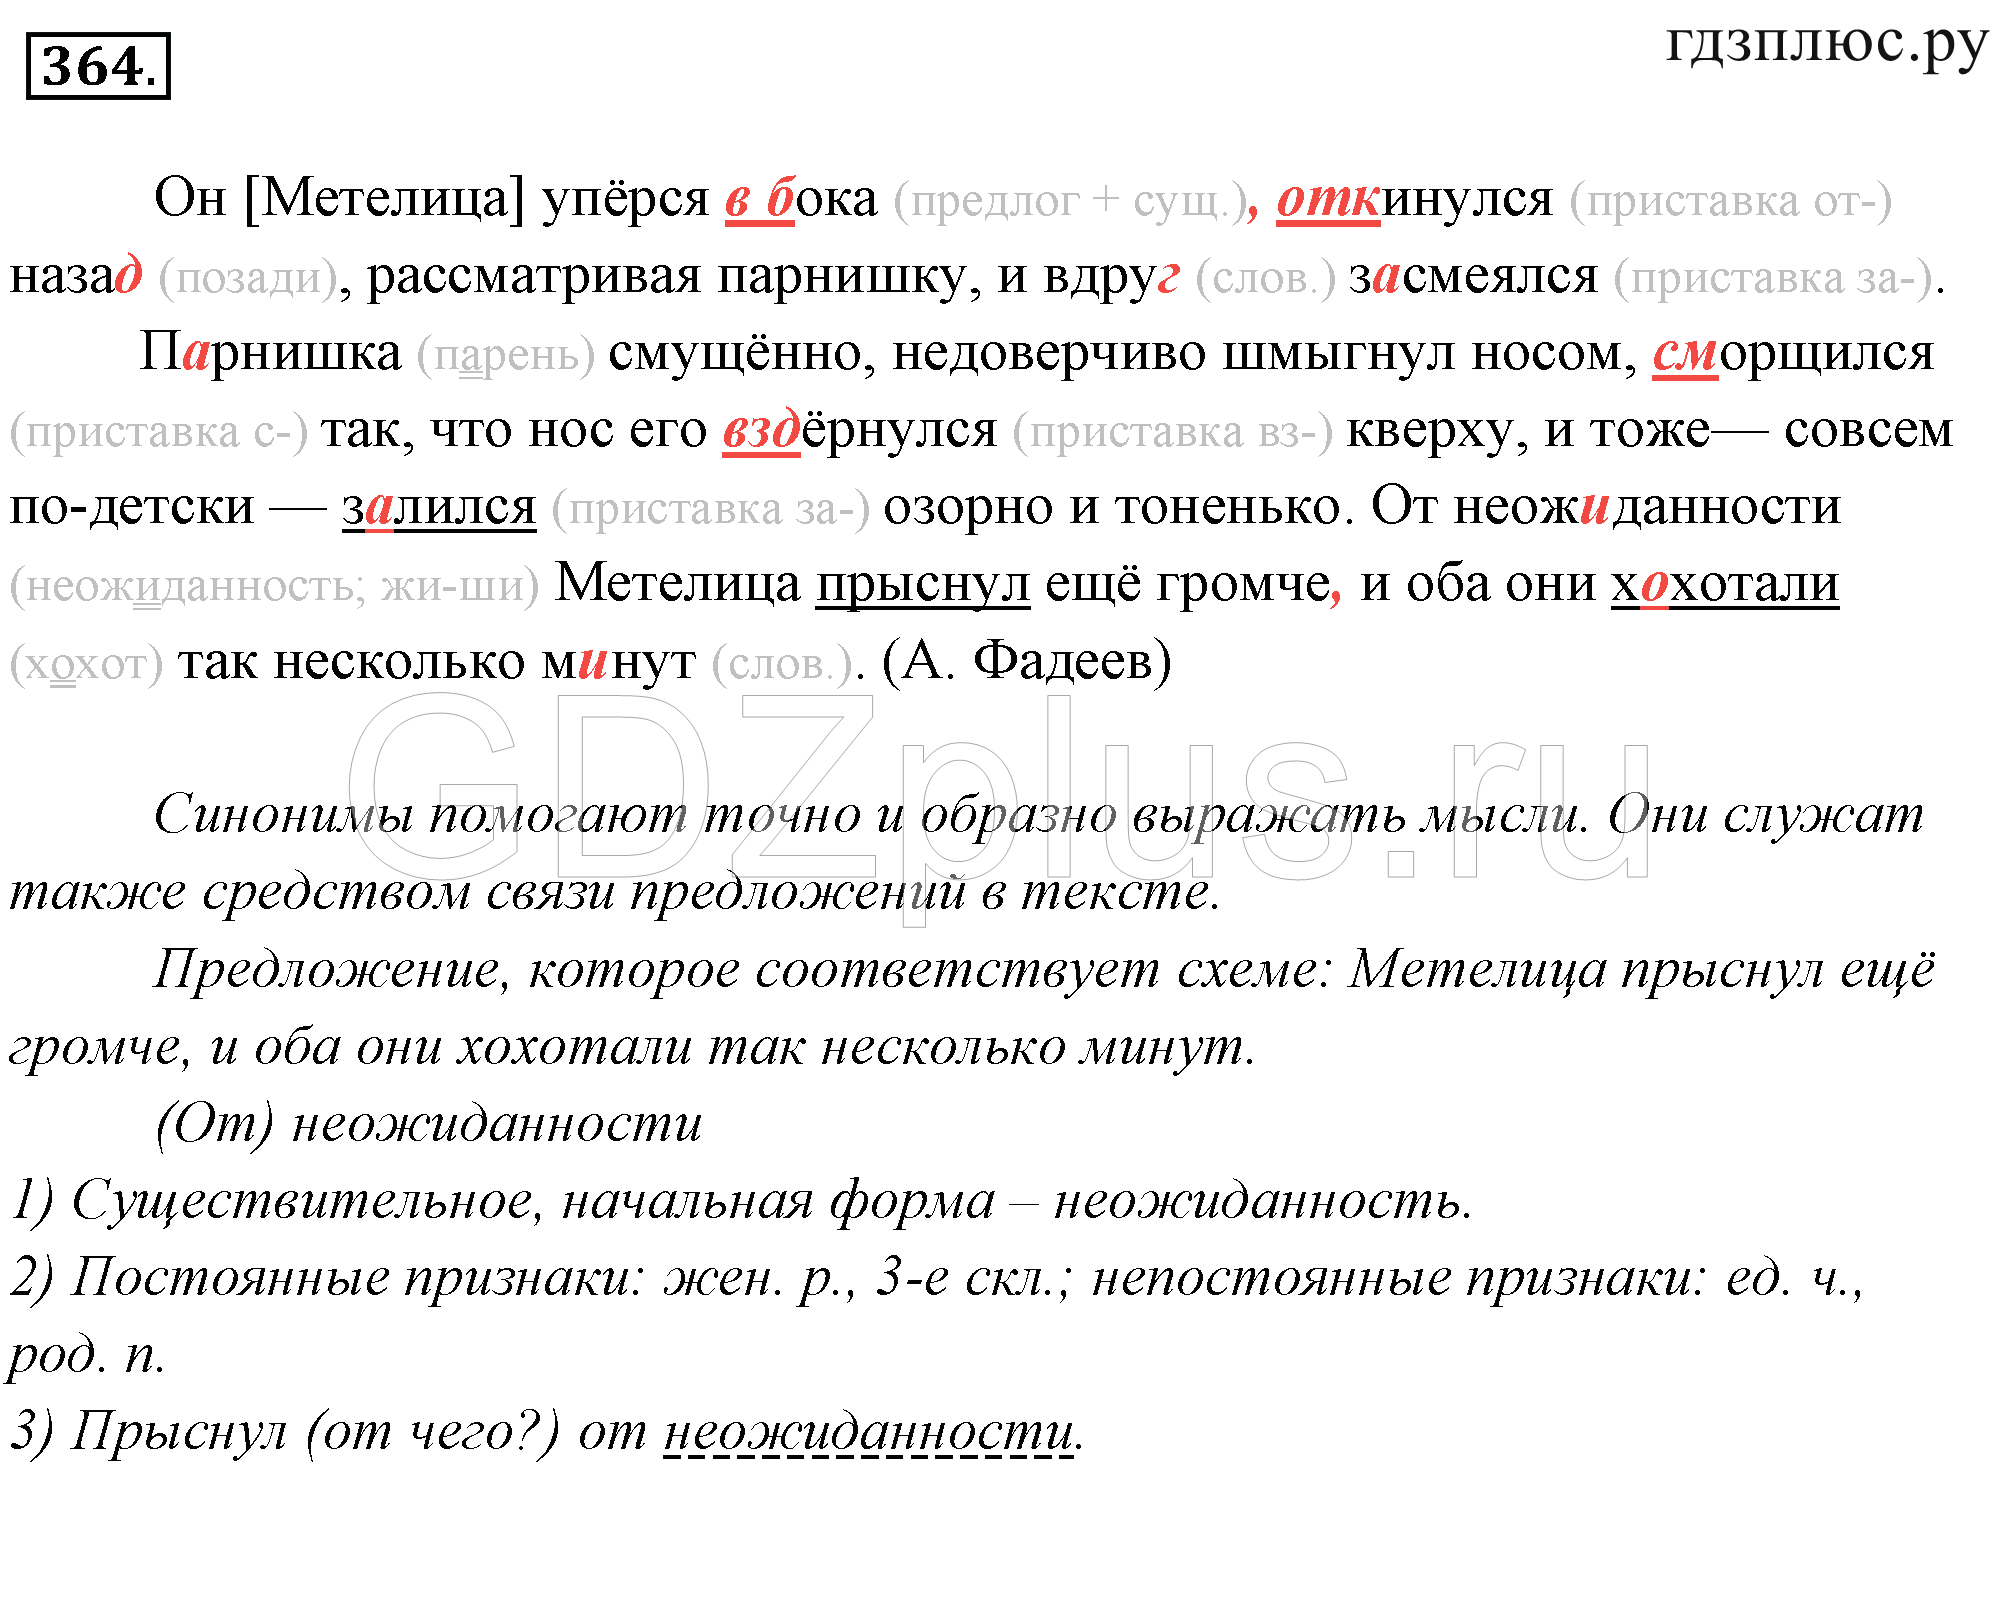 Гдз по русскому языку 364